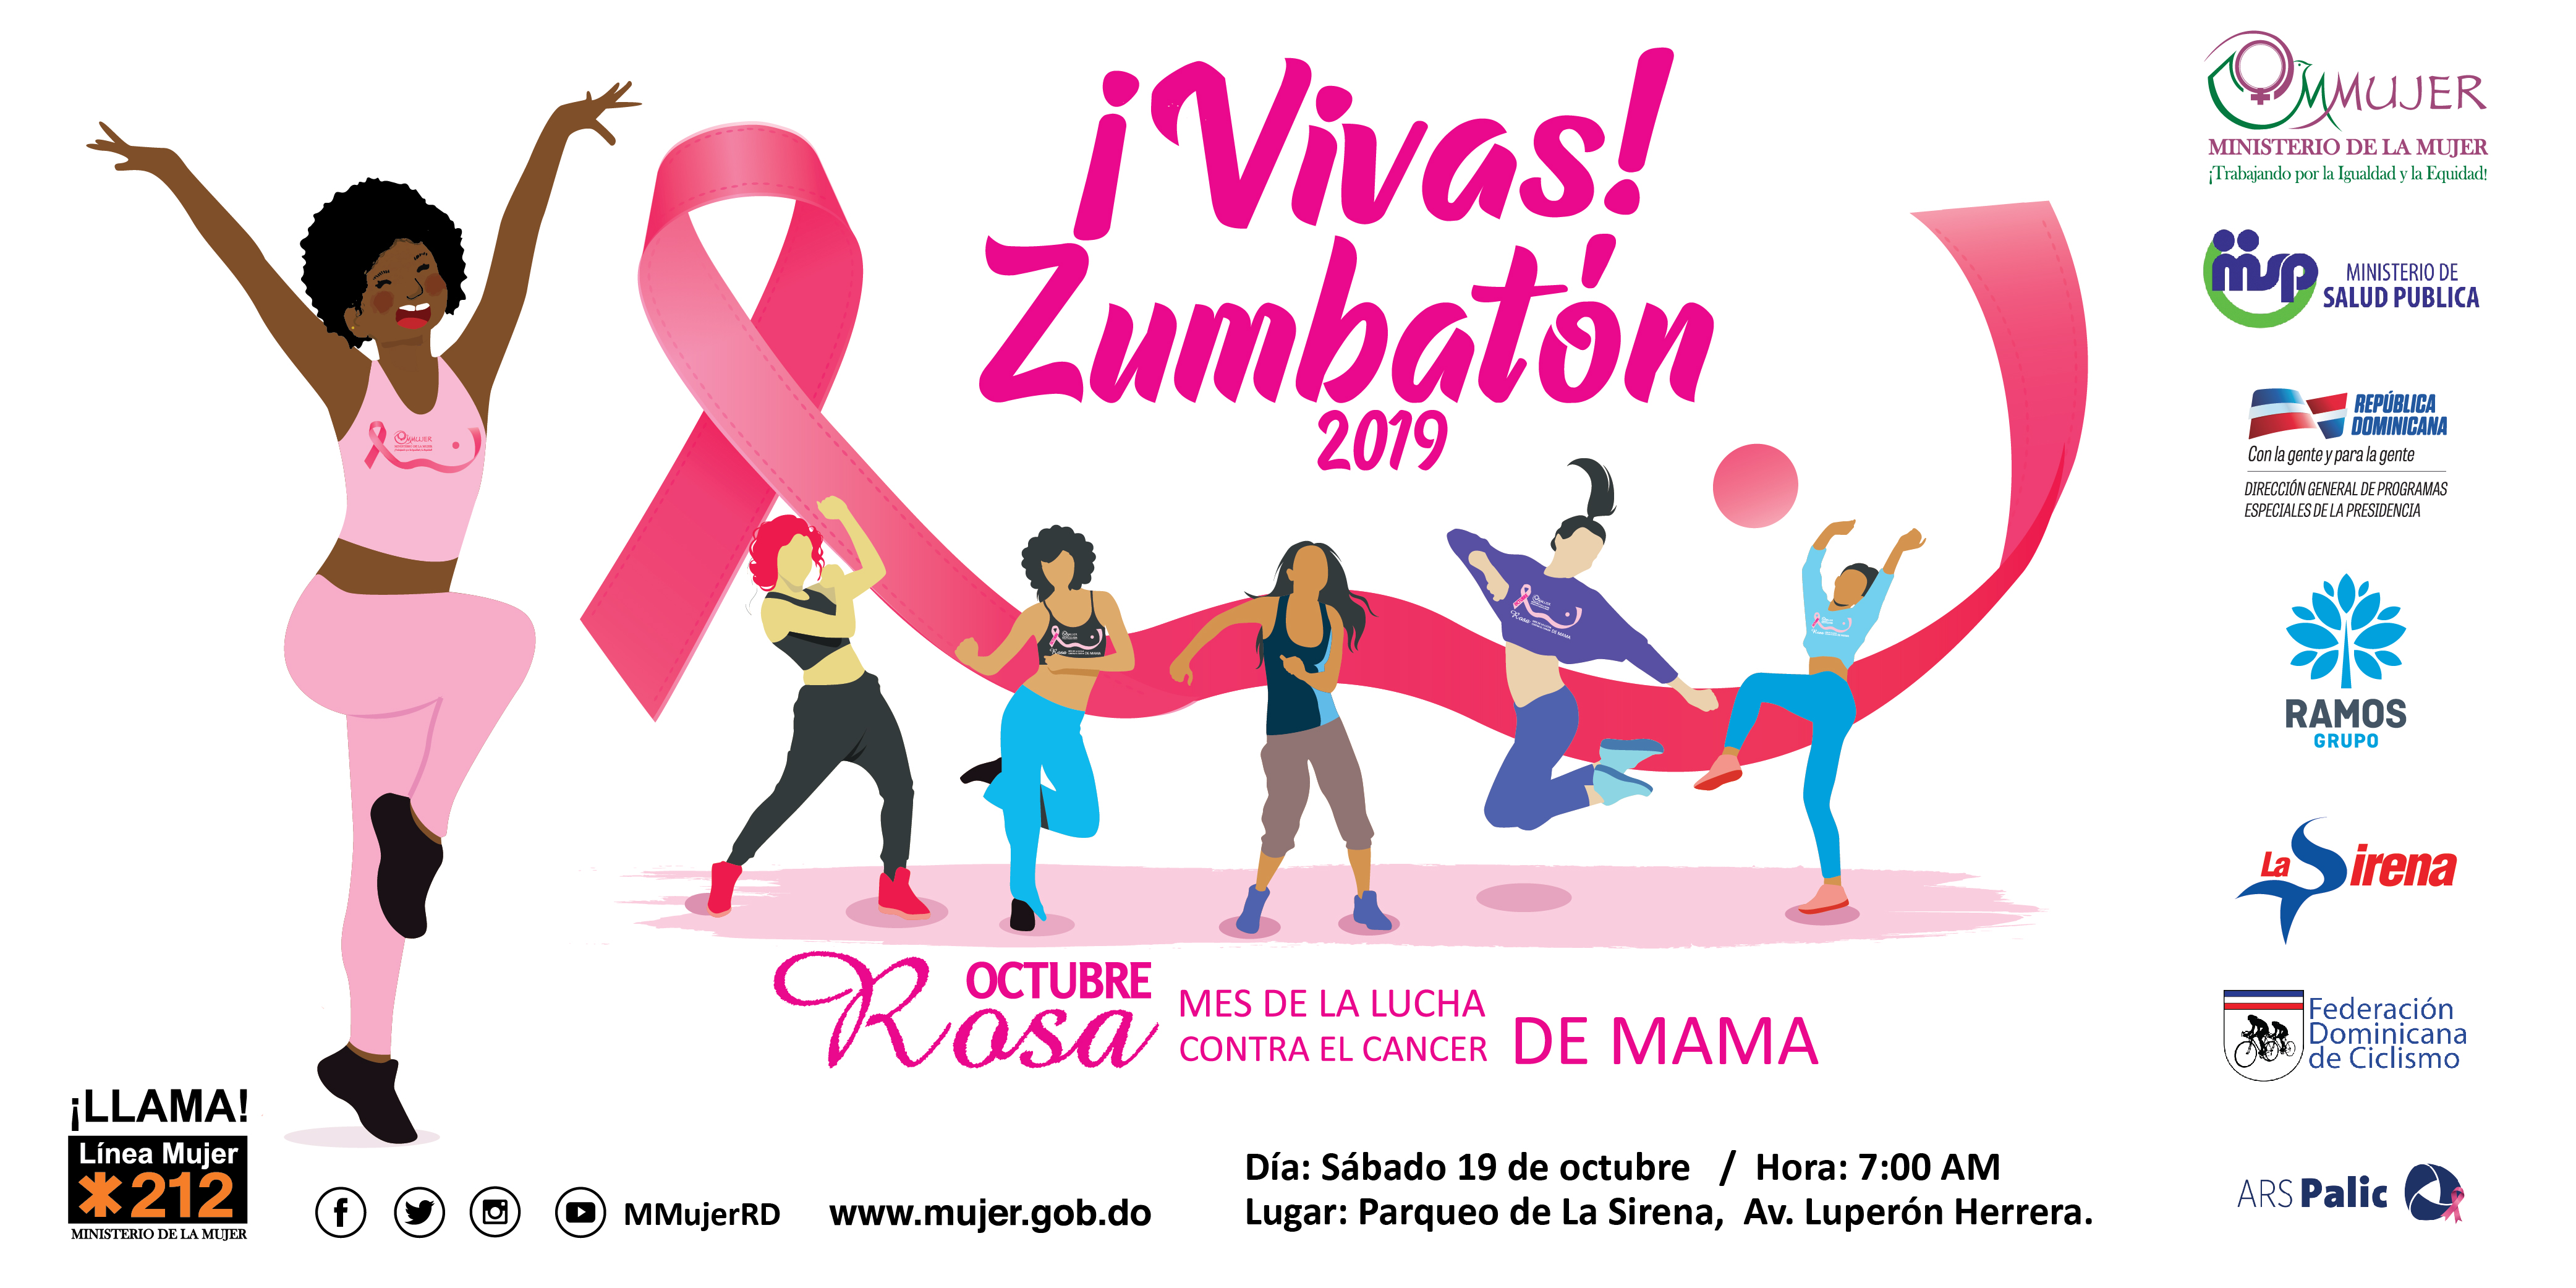 MMujer y La Sirena convocan al “Zumbatón 2019” para alertar sobre la detección temprana del cáncer de mama